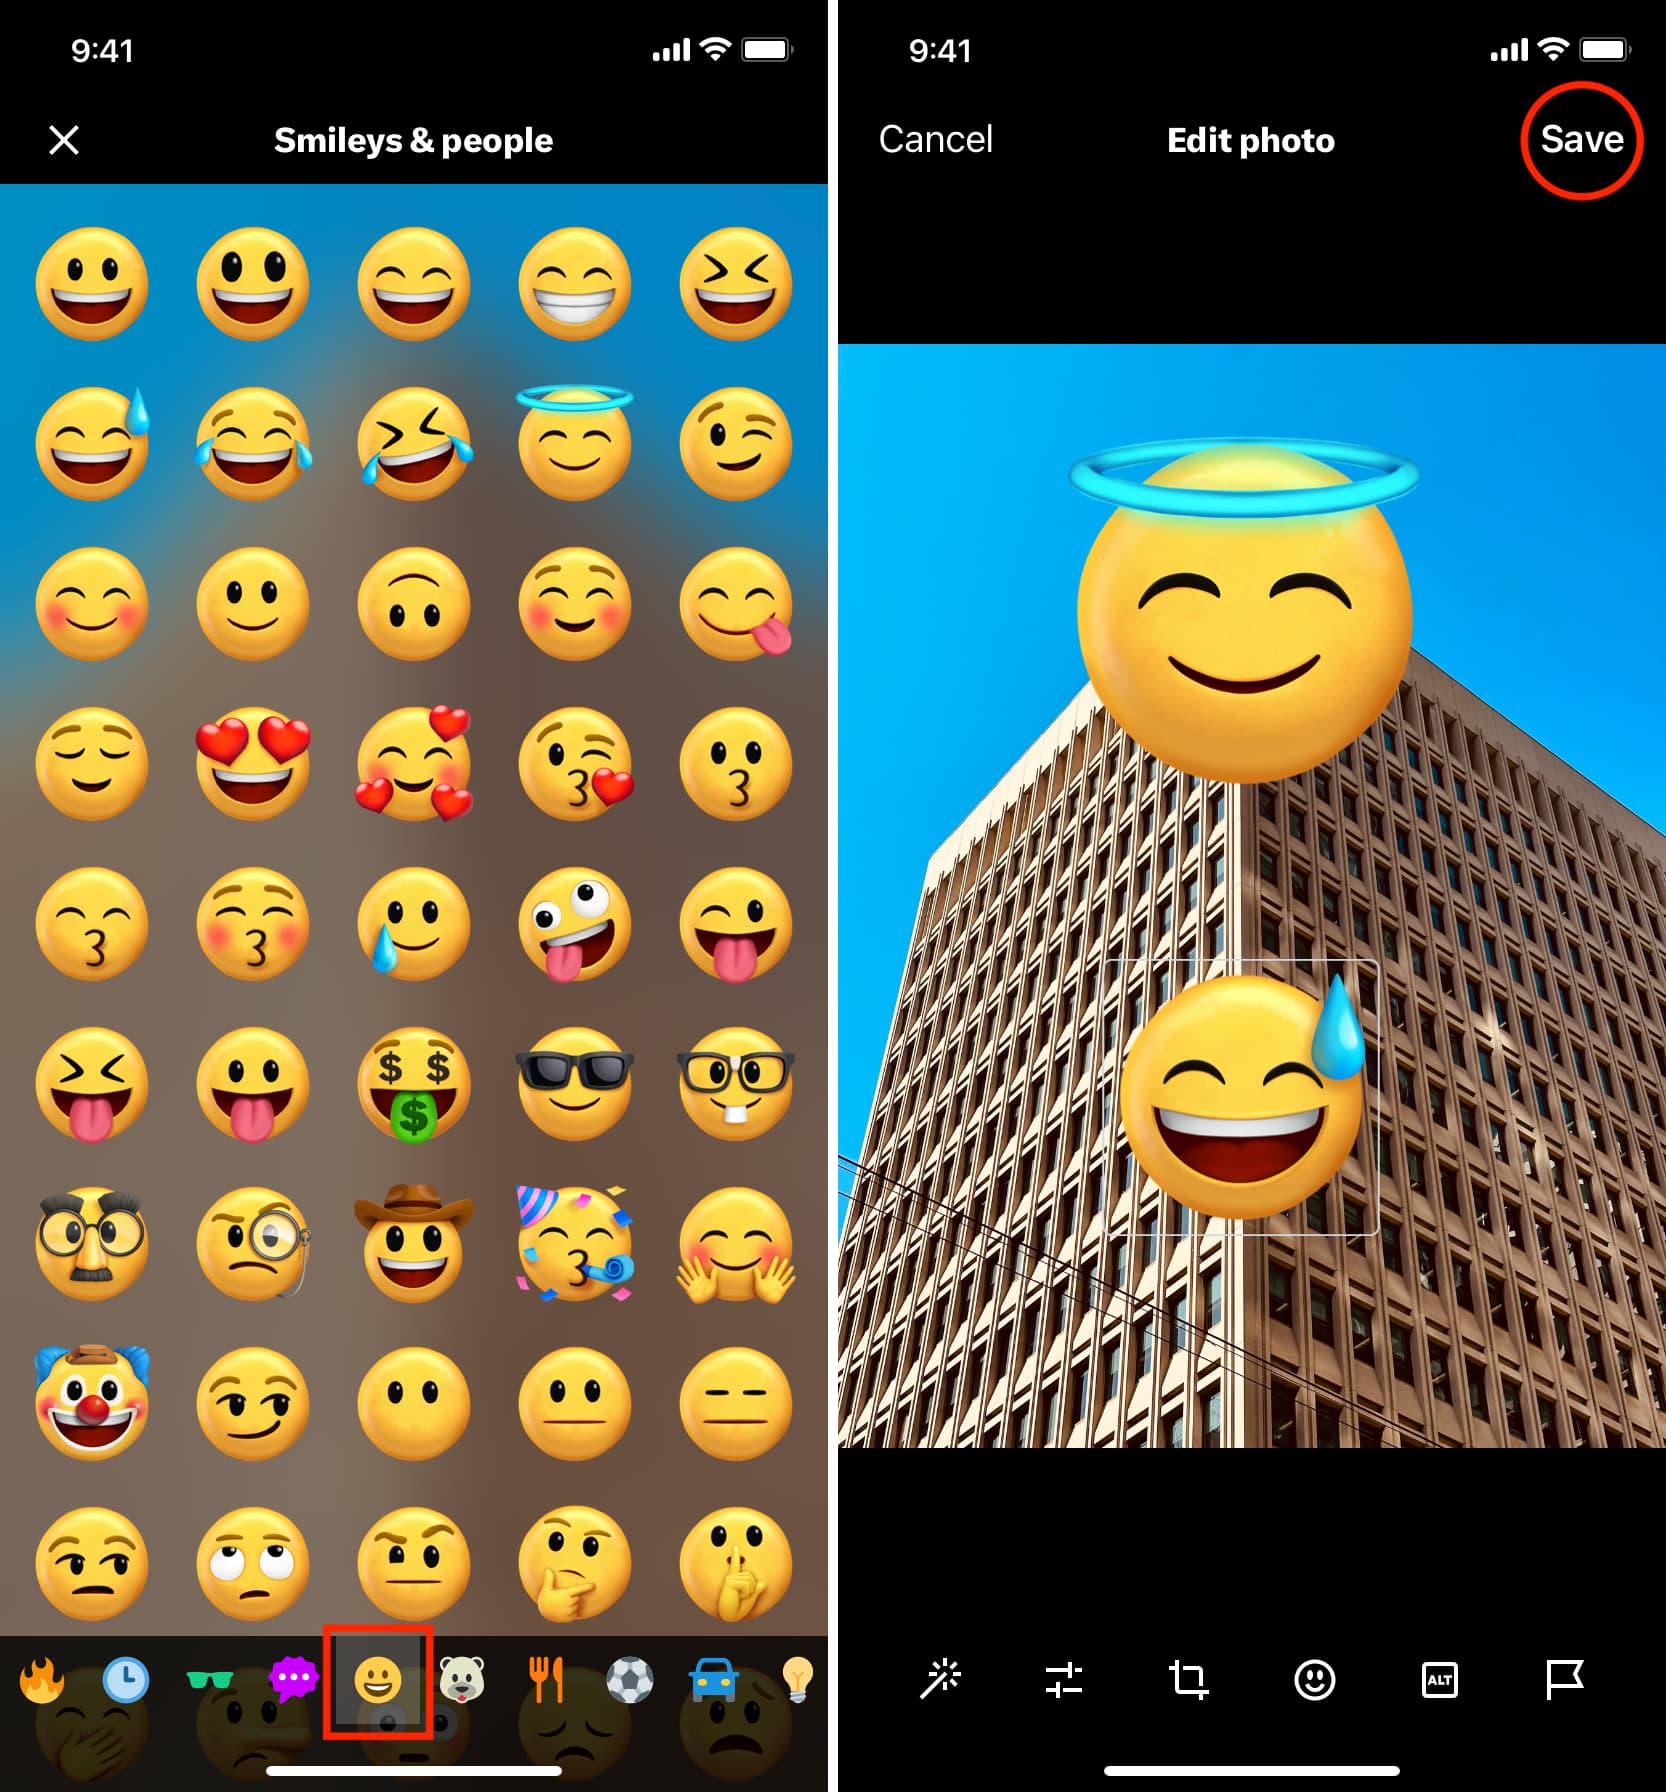 Choisissez l'emoji souhaité à ajouter à la photo dans l'application Twitter